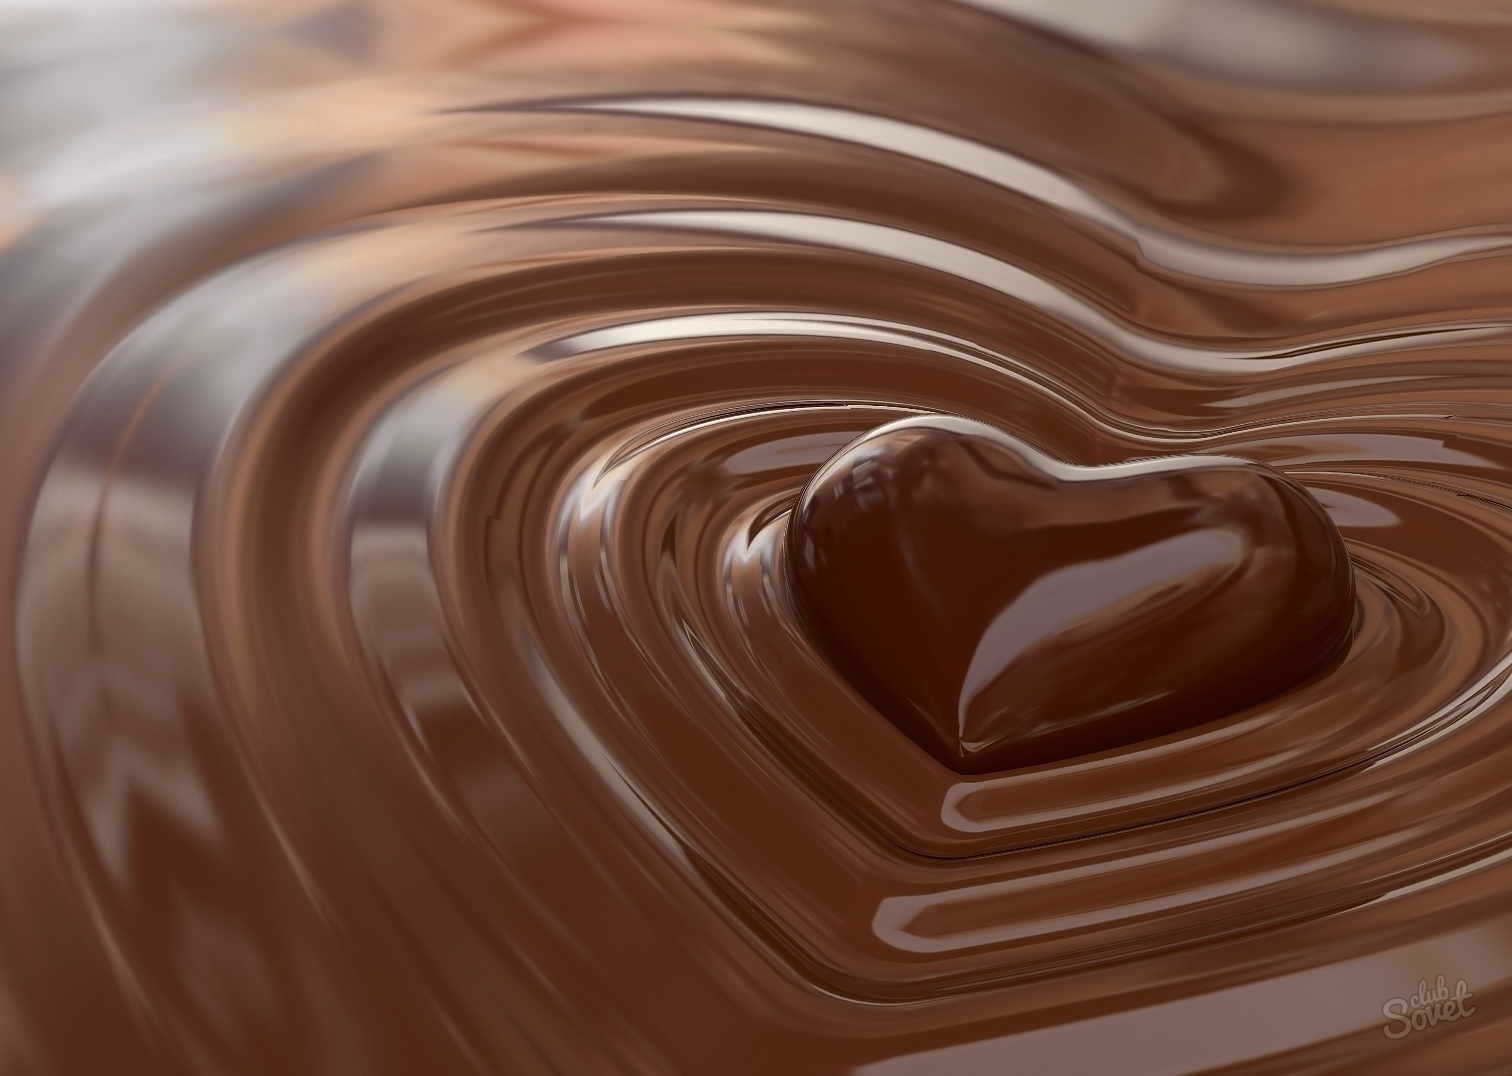 Kako rastopiti čokoladu u mikrovalnoj pećnici